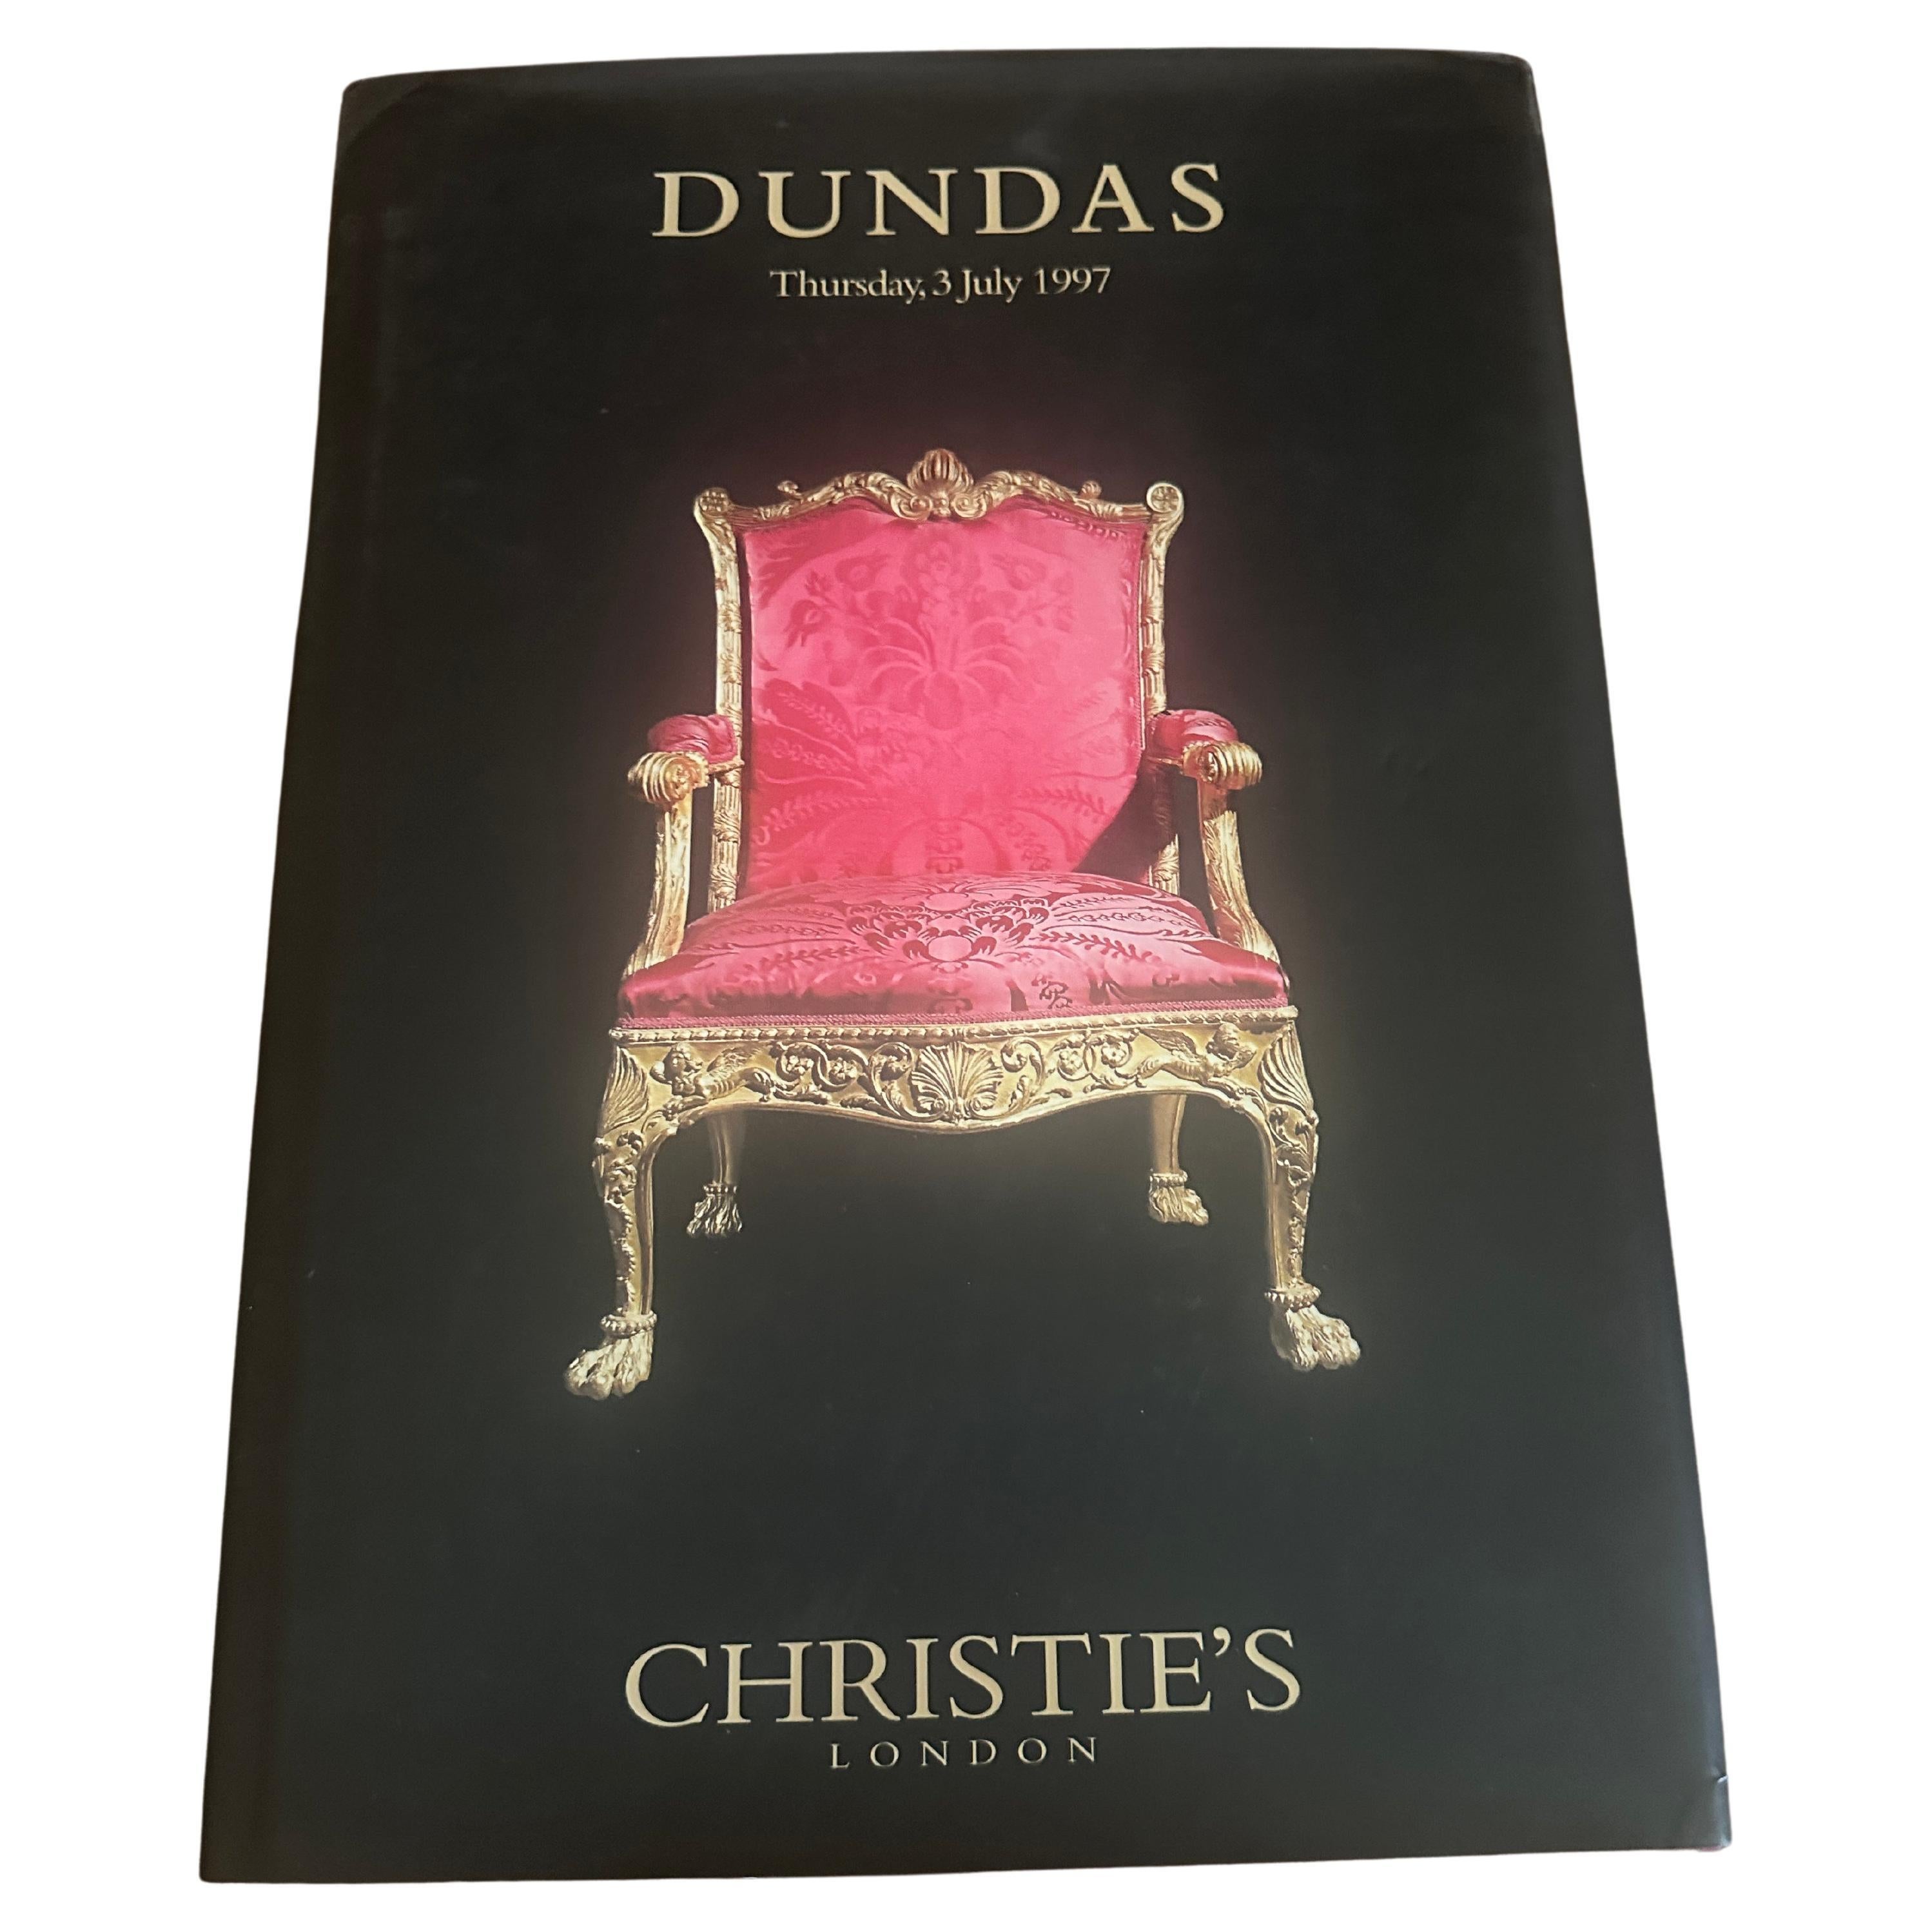 Vendita di Christie's Dundas, 1997